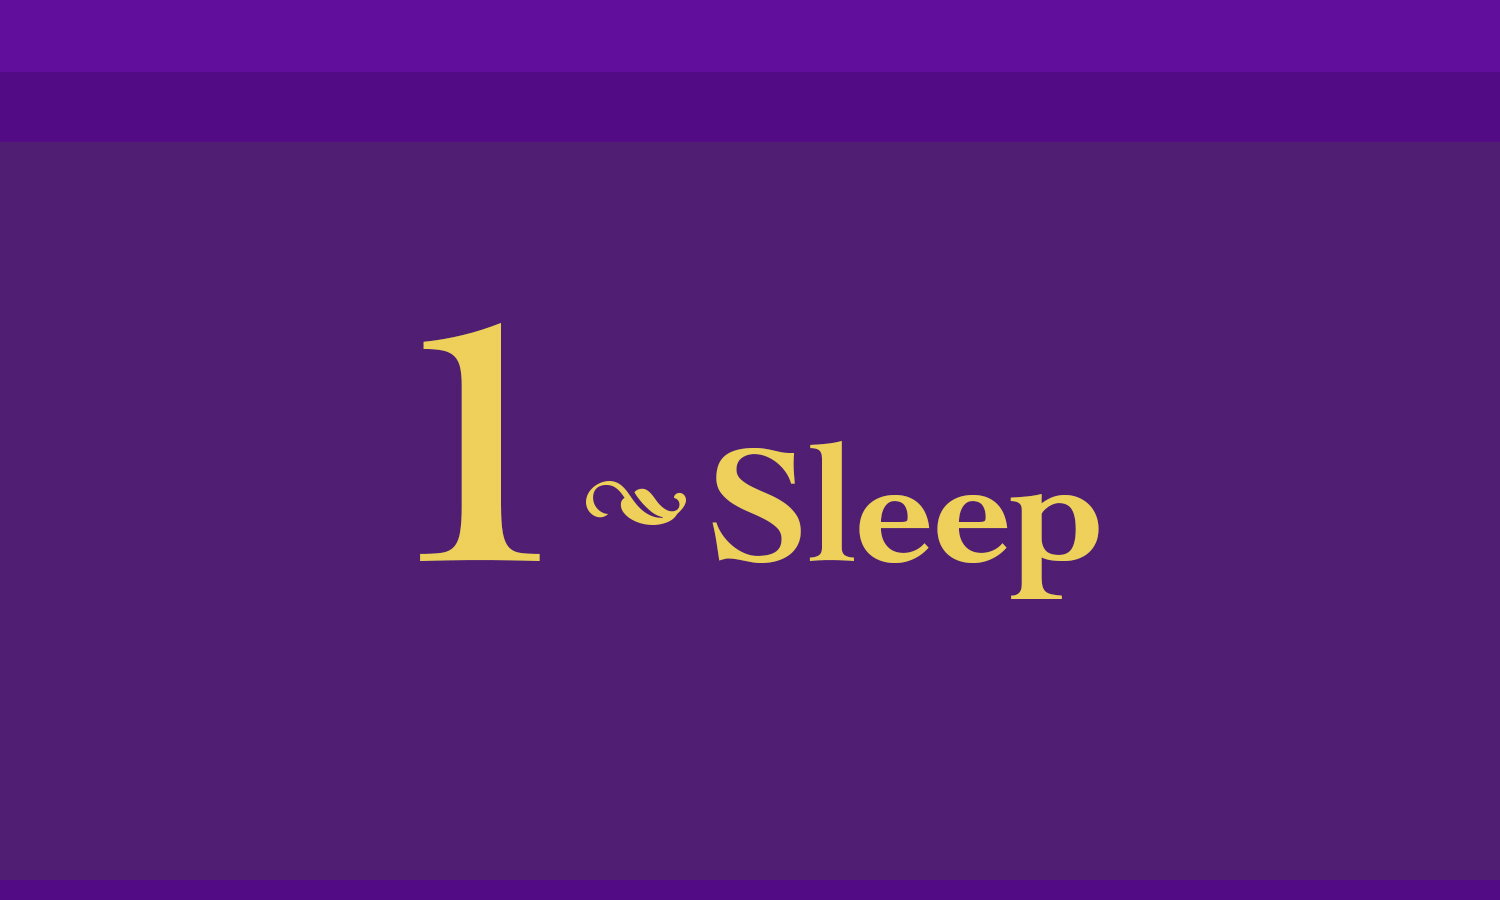 #1 sleep image